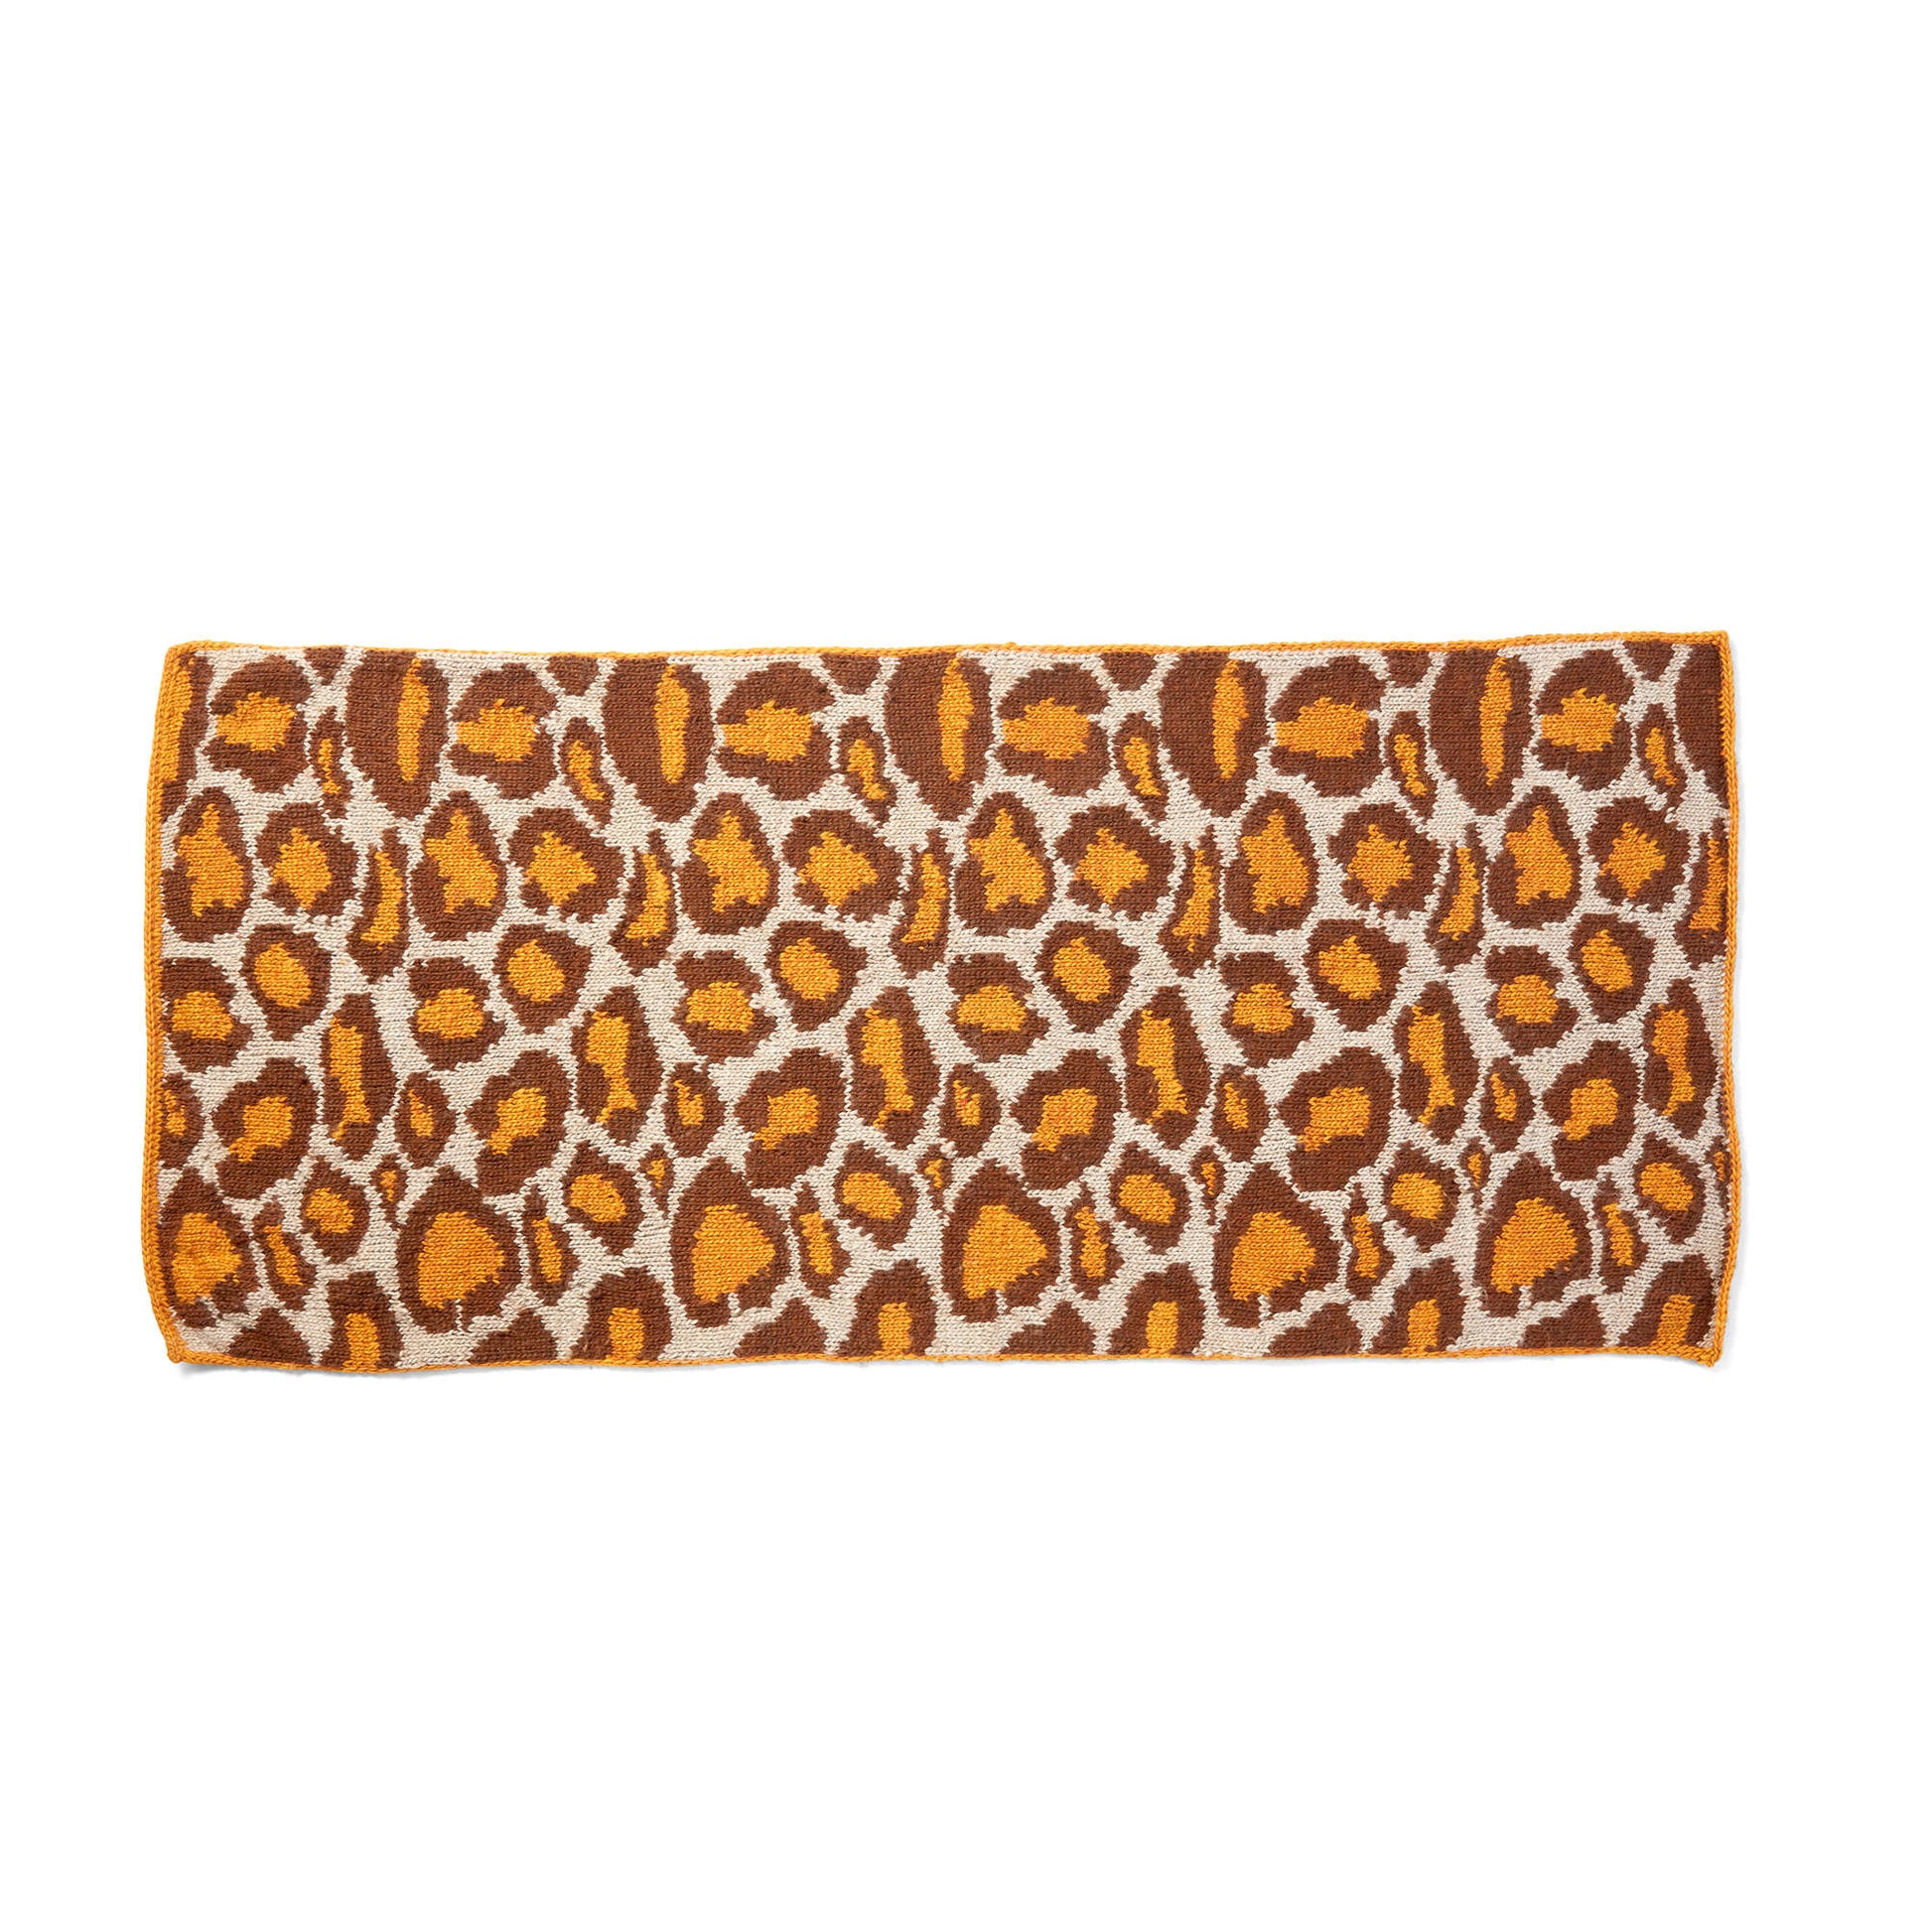 Free Patons Leopard Print Knit Wrap Pattern